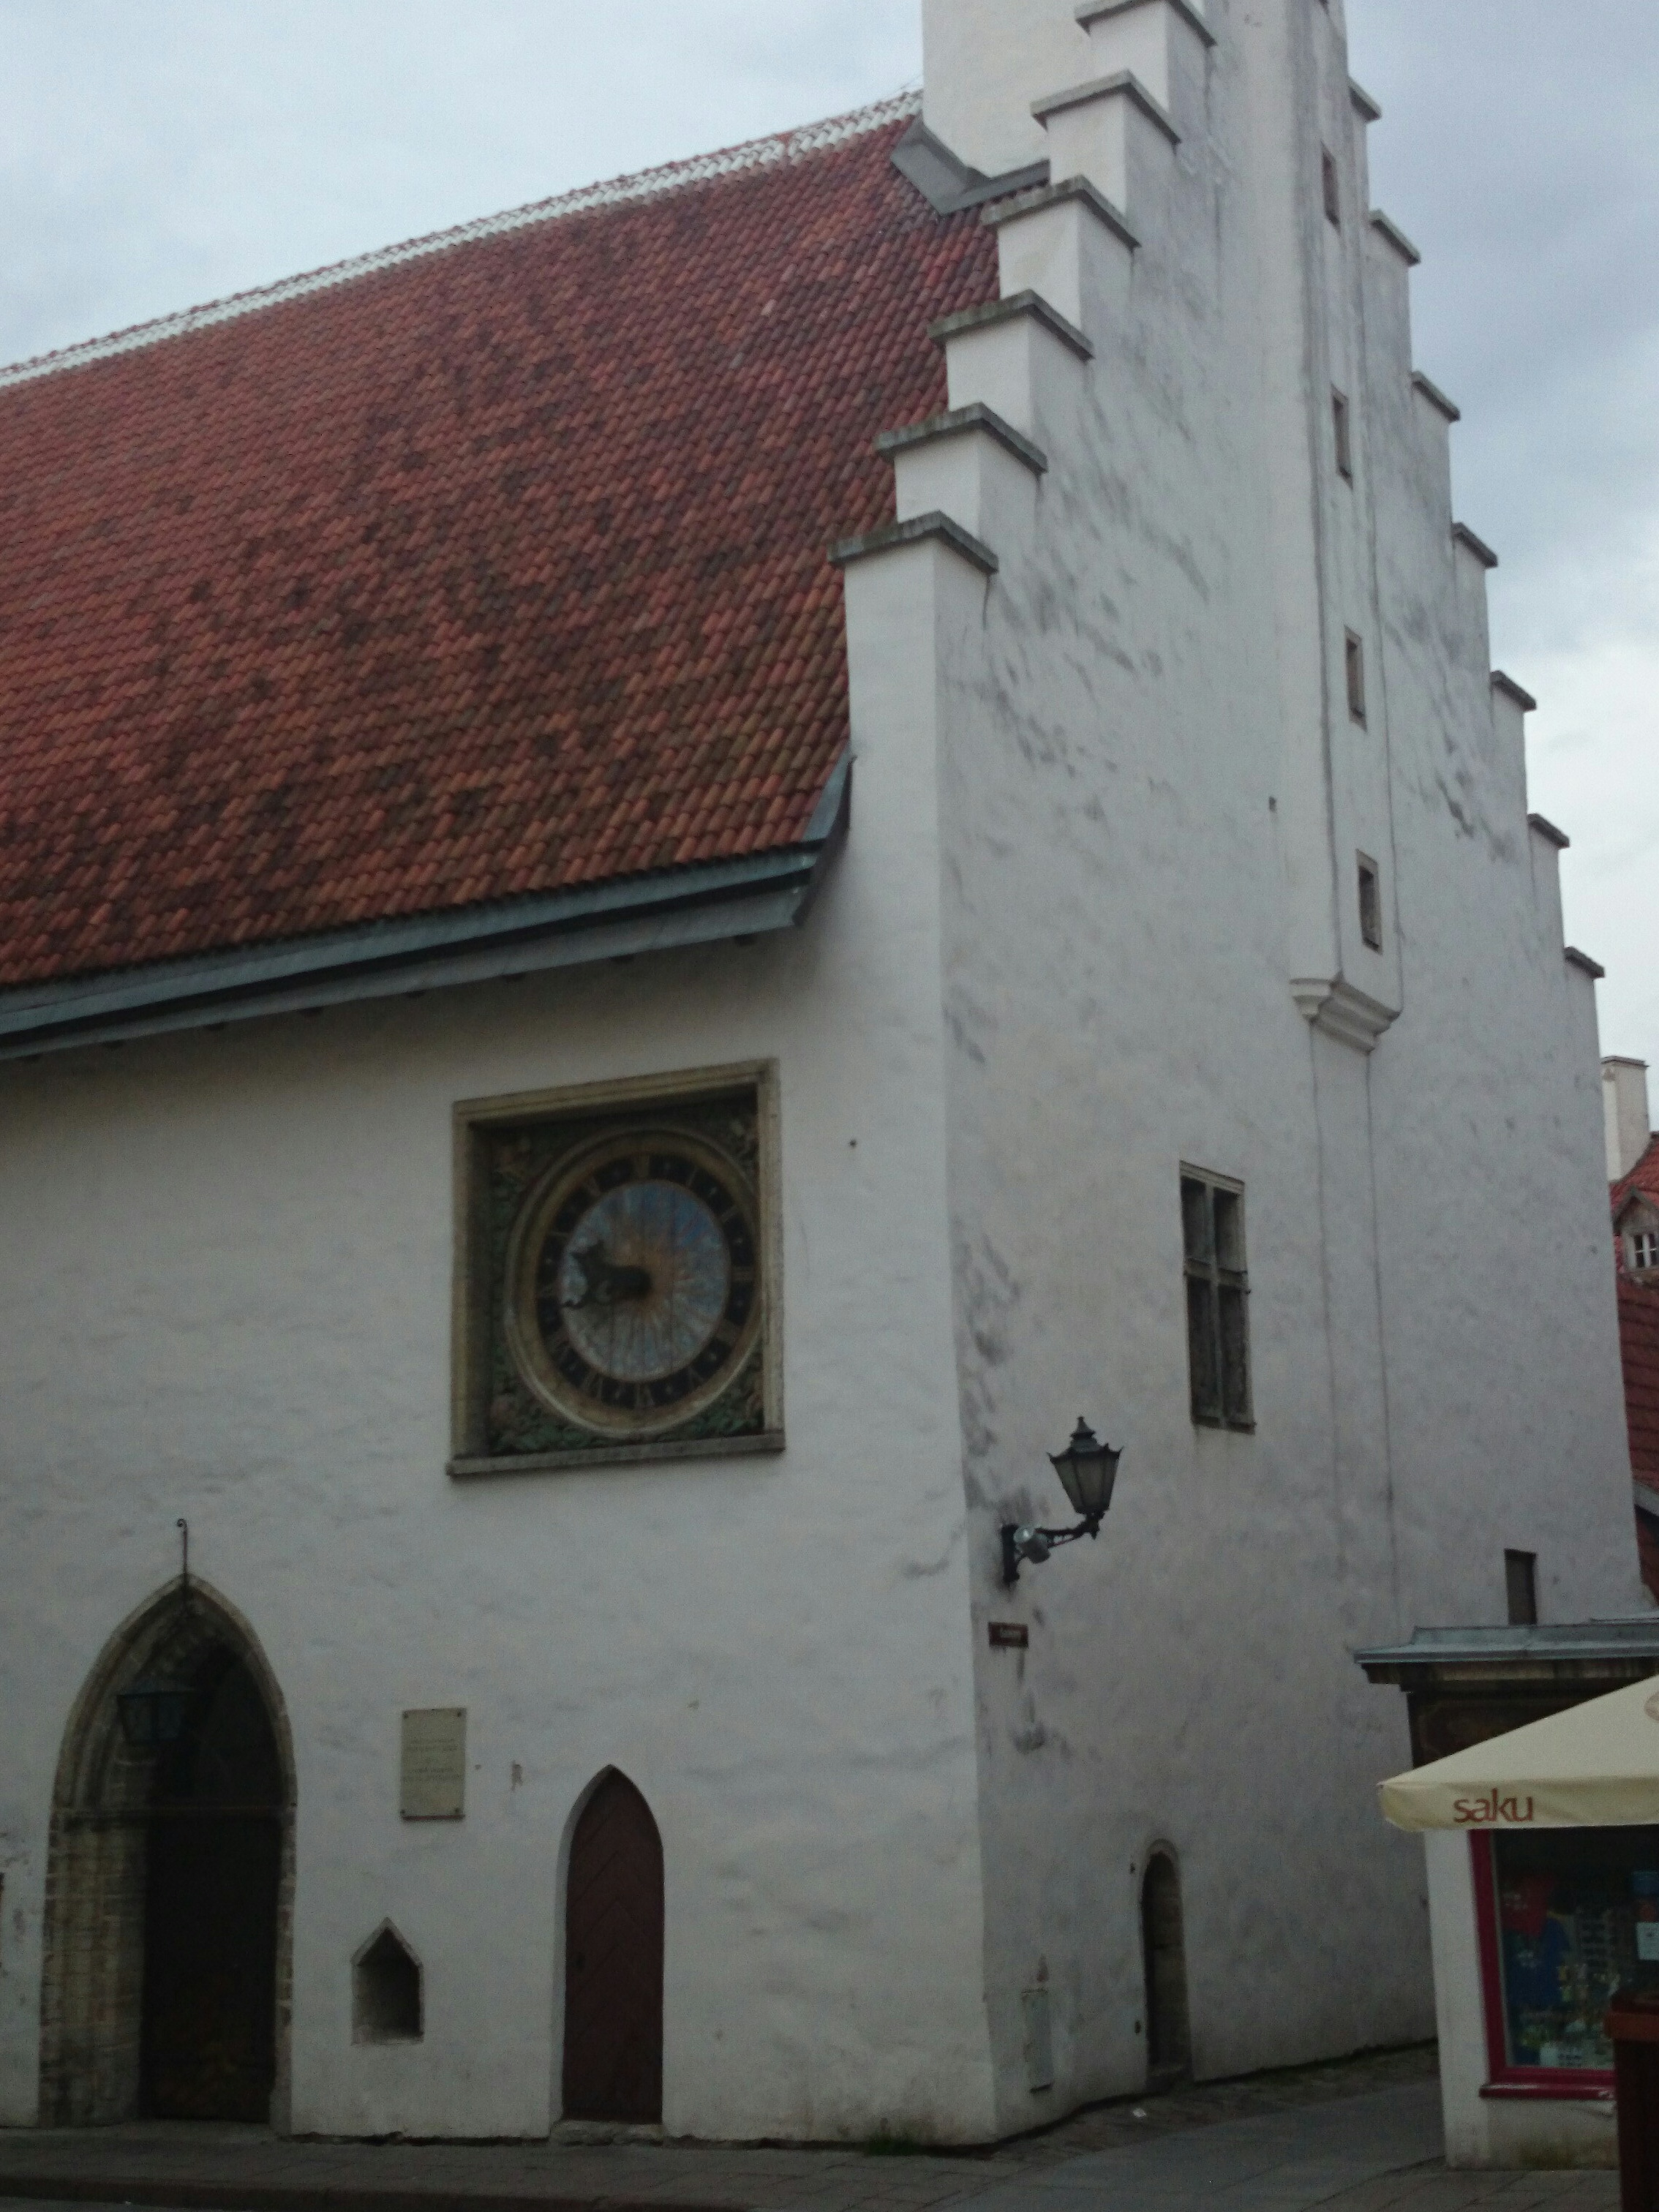 Tallinn, Pühavaimu kiriku vana kell 17. sajandist. rephoto